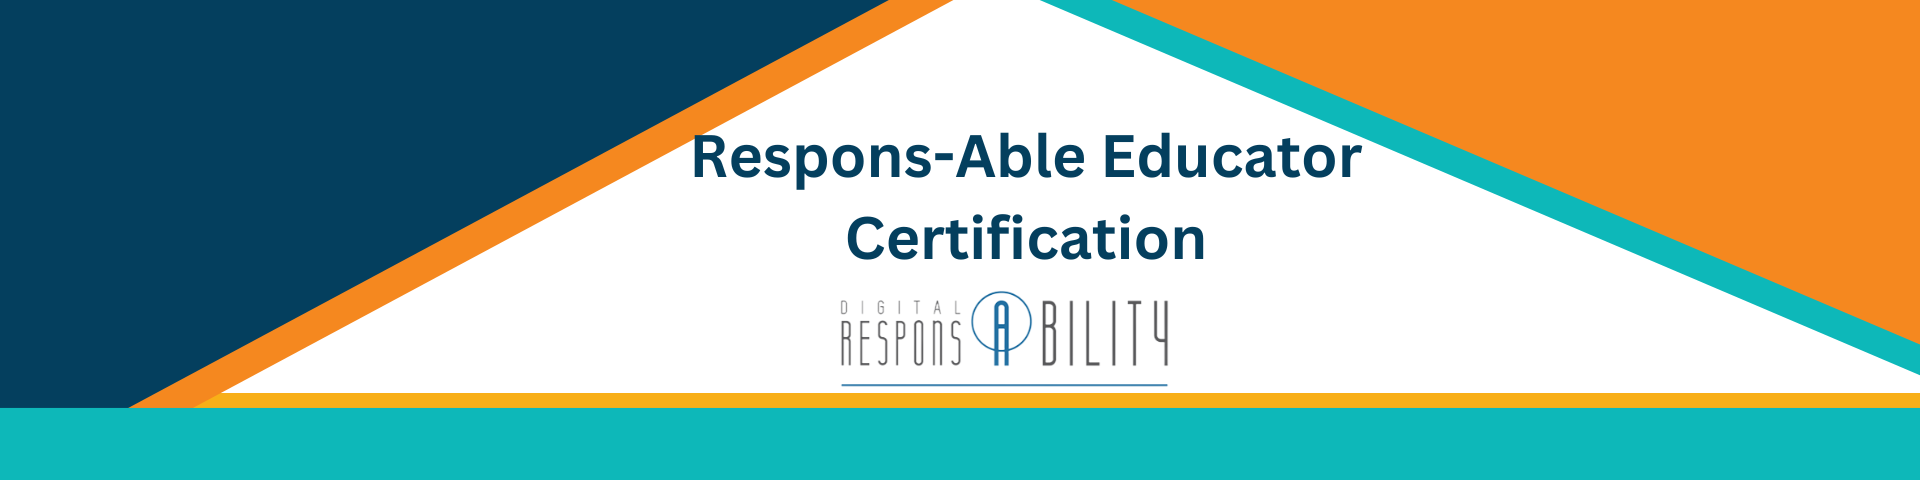 Responsible Educator Certification 